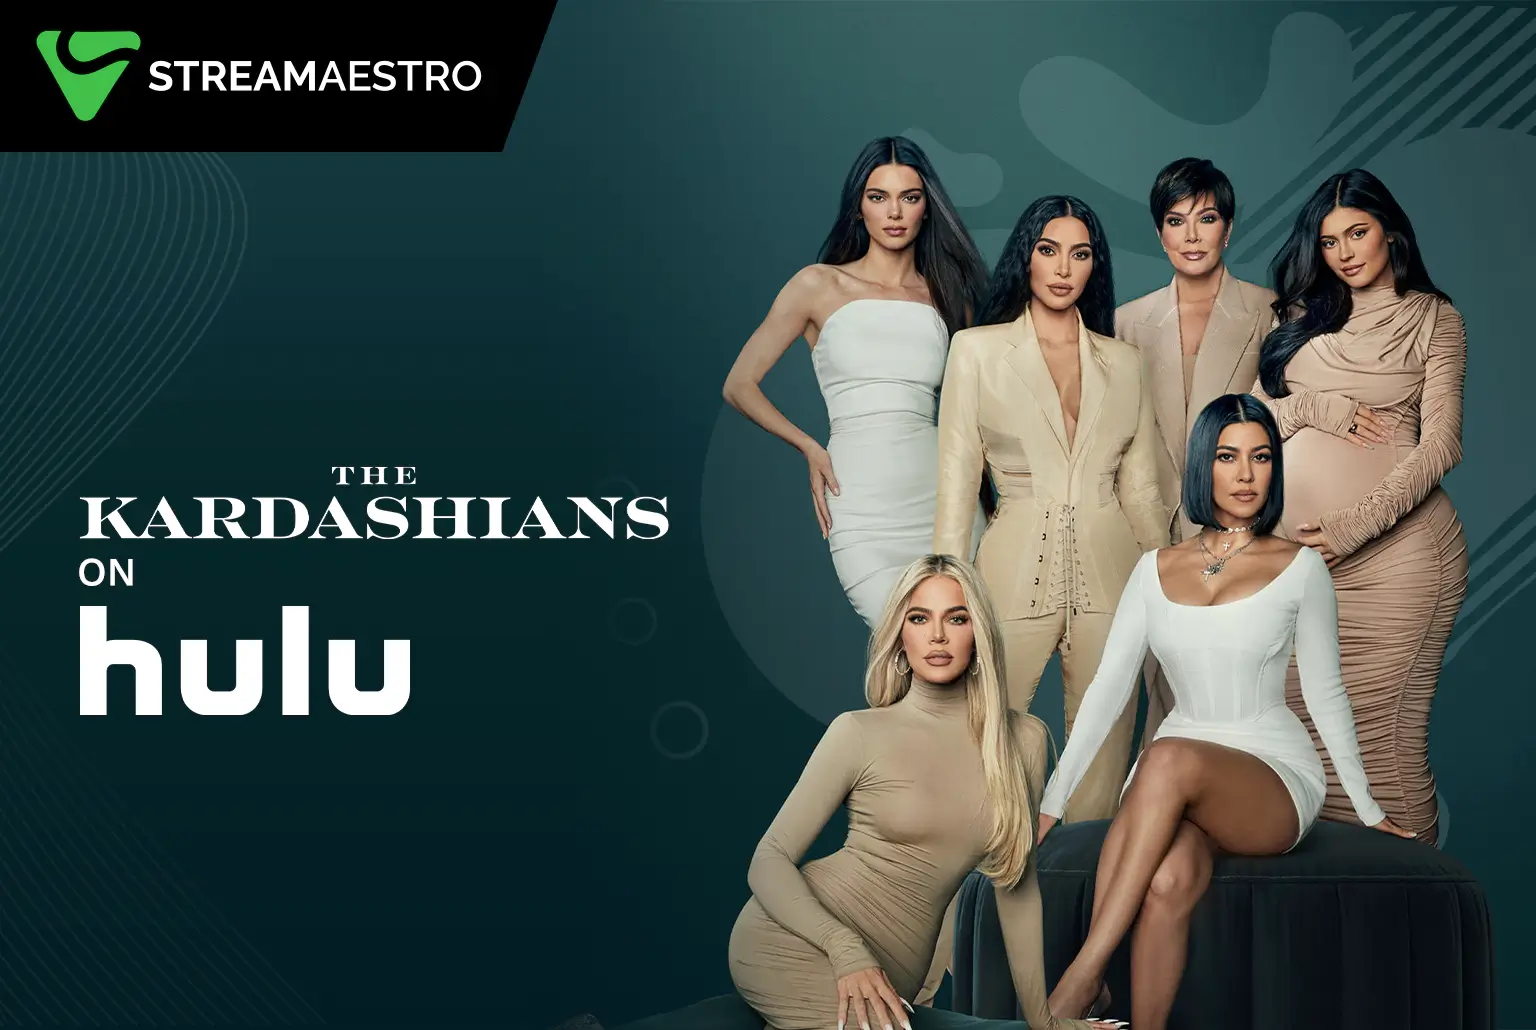 Watch The Kardashians Season 3 on Hulu